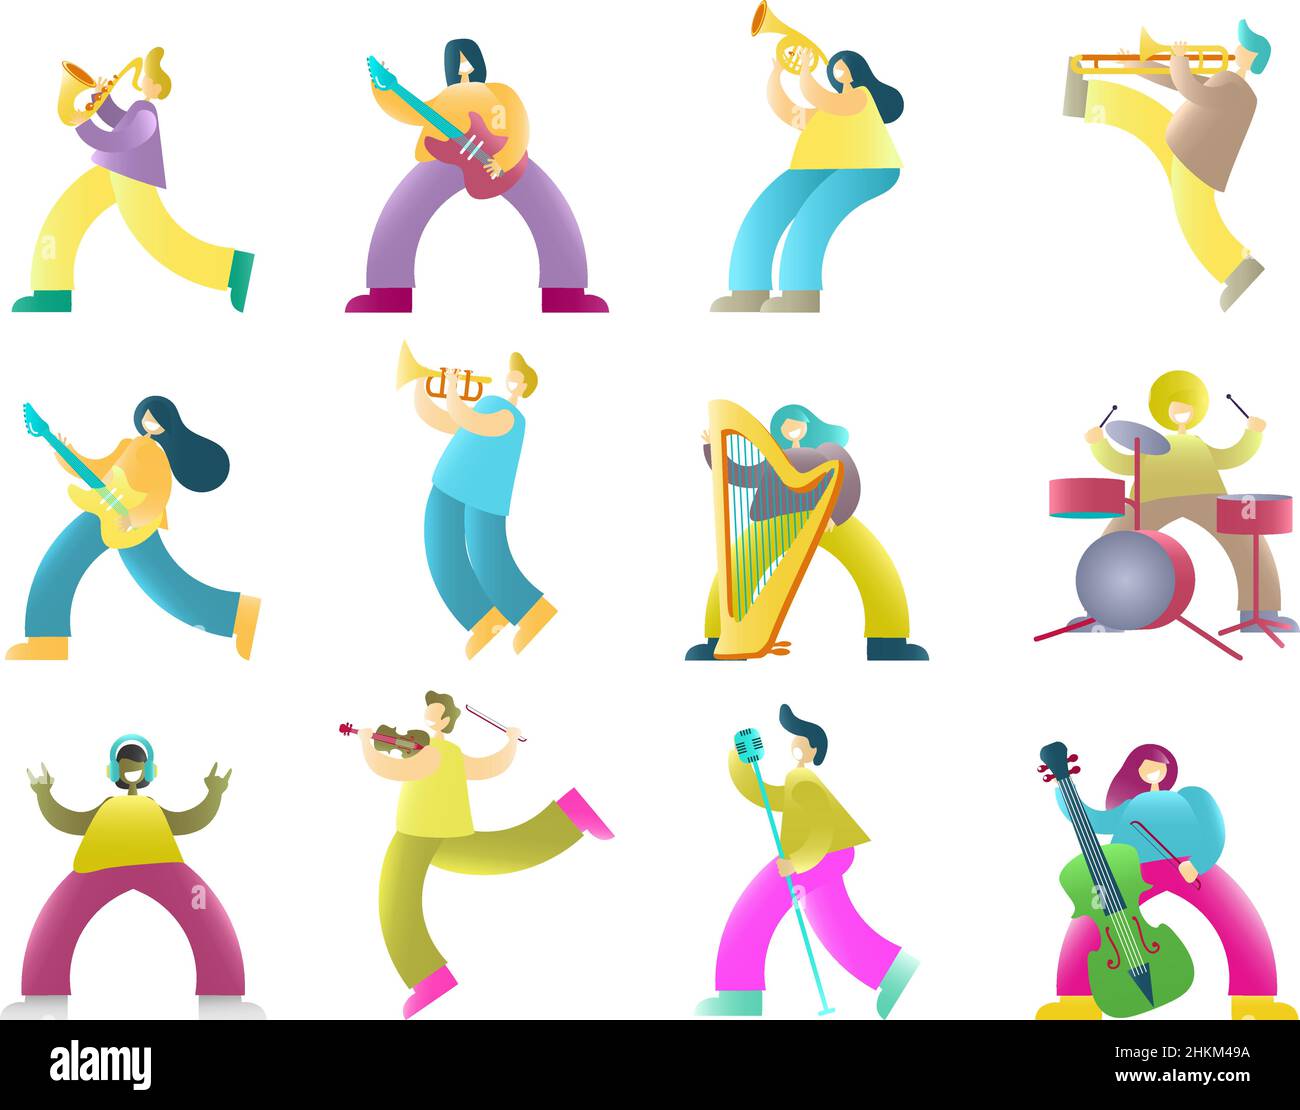 Les musiciens colorent les personnages de dessin animé, illustration vectorielle isolée Illustration de Vecteur